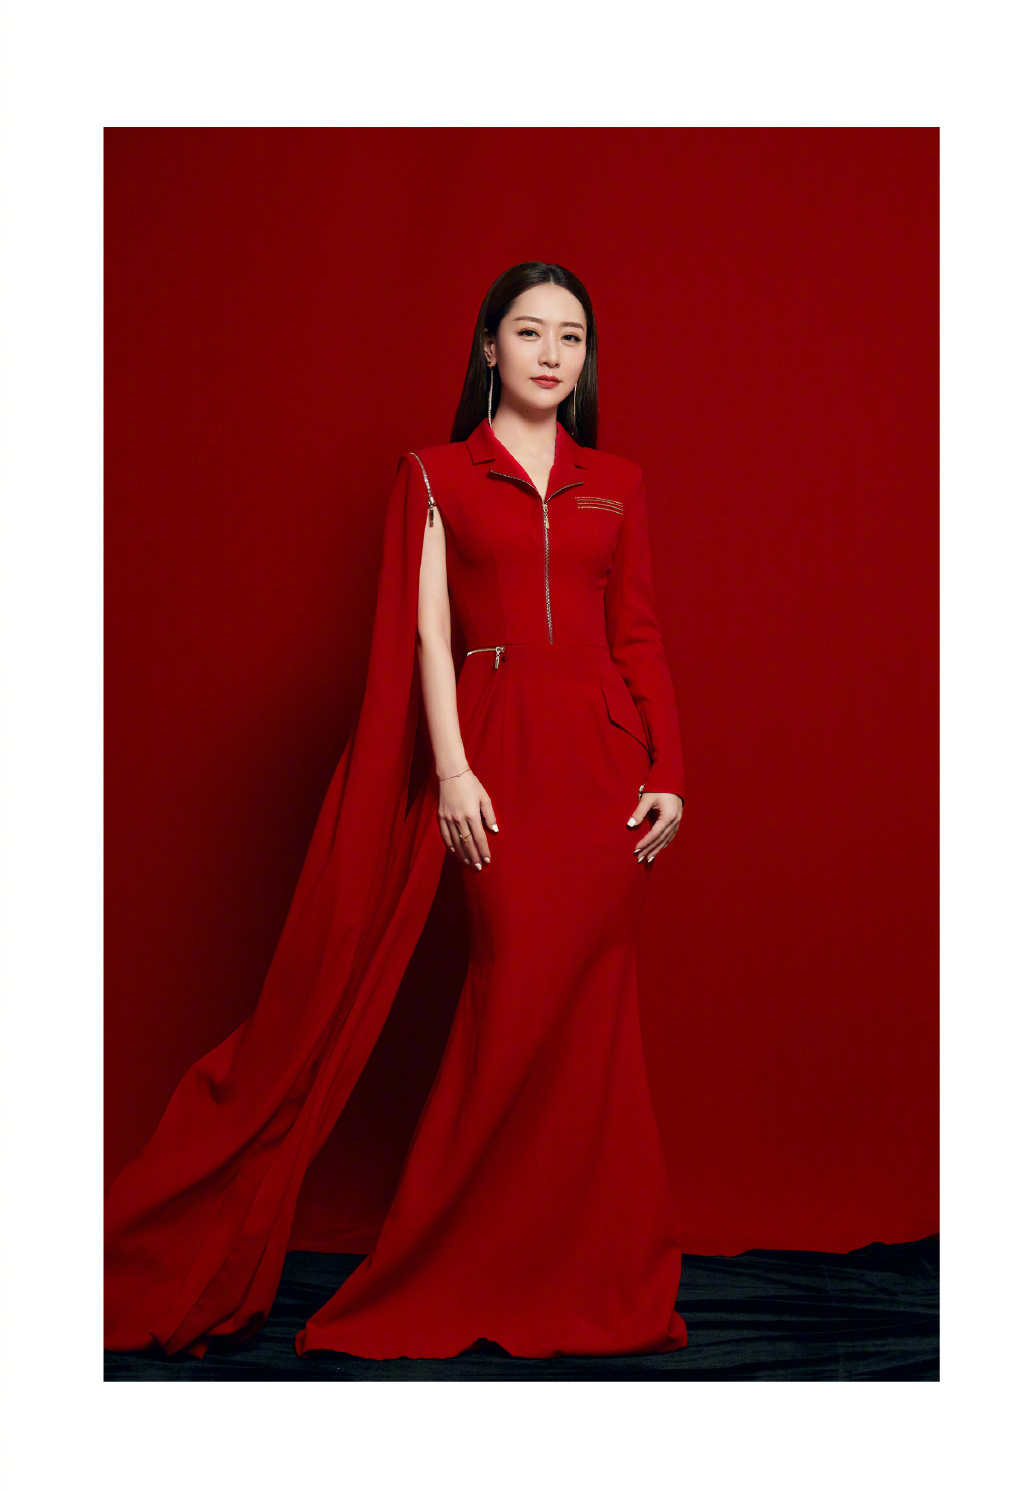 白冰魅力中国红超美艺术感写真图片图片